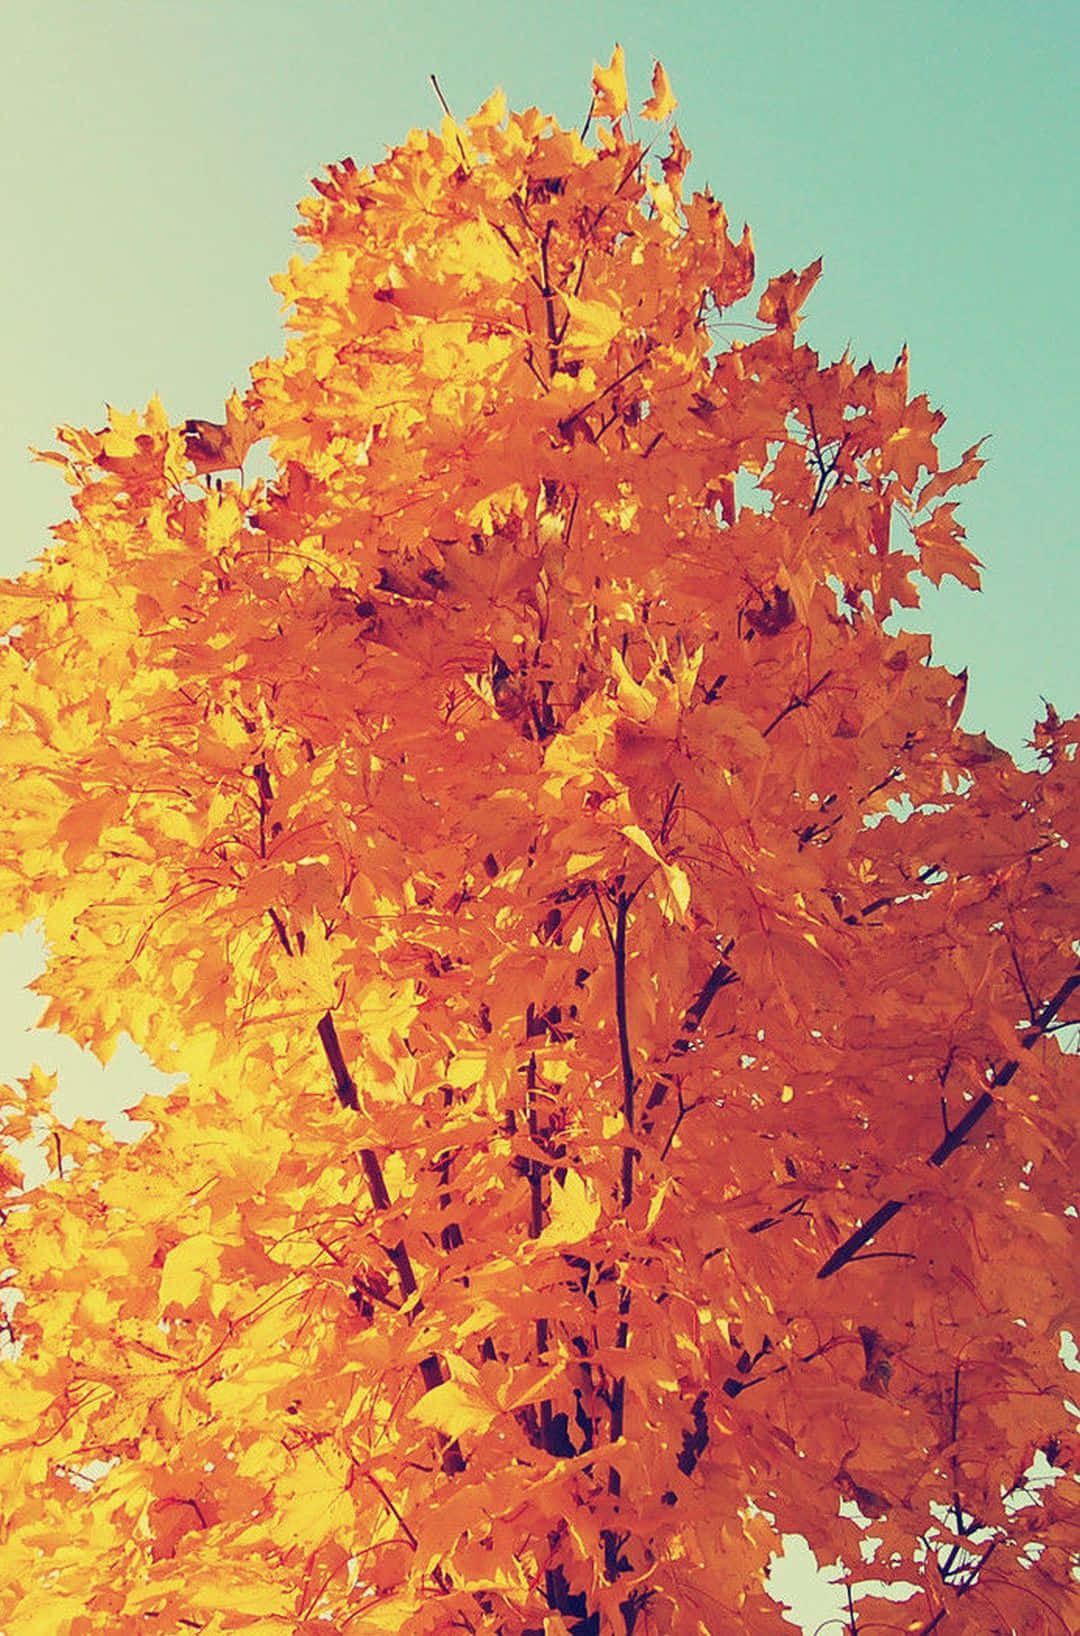 Erlebensie Die Herbstsaison Mit Dem Apple Iphone 6 Plus. Wallpaper